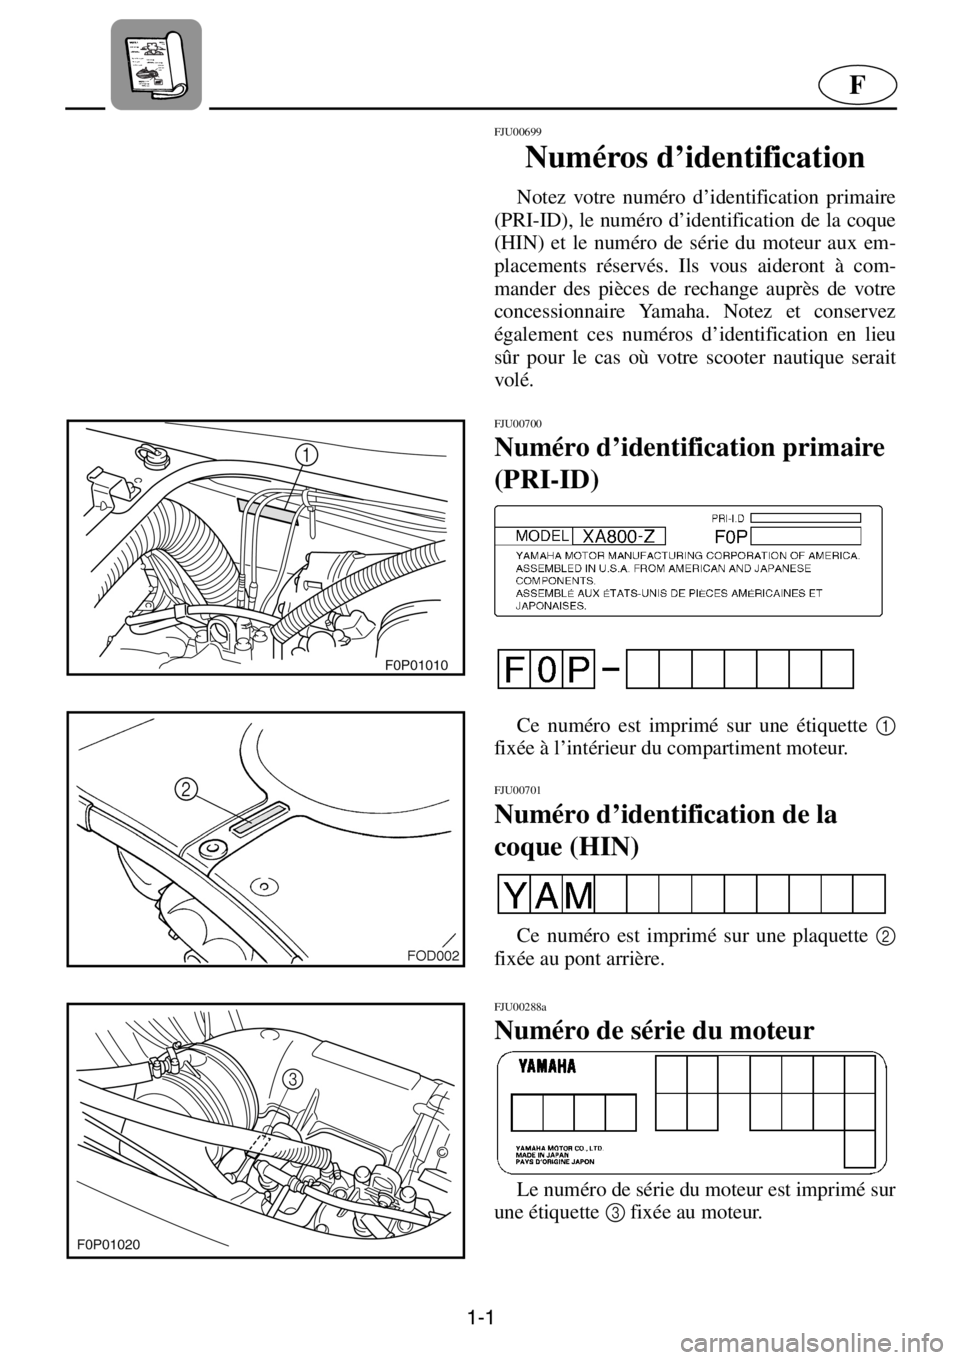 YAMAHA XL 800 2001  Manuale de Empleo (in Spanish) 1-1
F
FJU00699 
Numéros d’identification  
Notez votre numéro d’identification primaire
(PRI-ID), le numéro d’identification de la coque
(HIN) et le numéro de série du moteur aux em-
placem